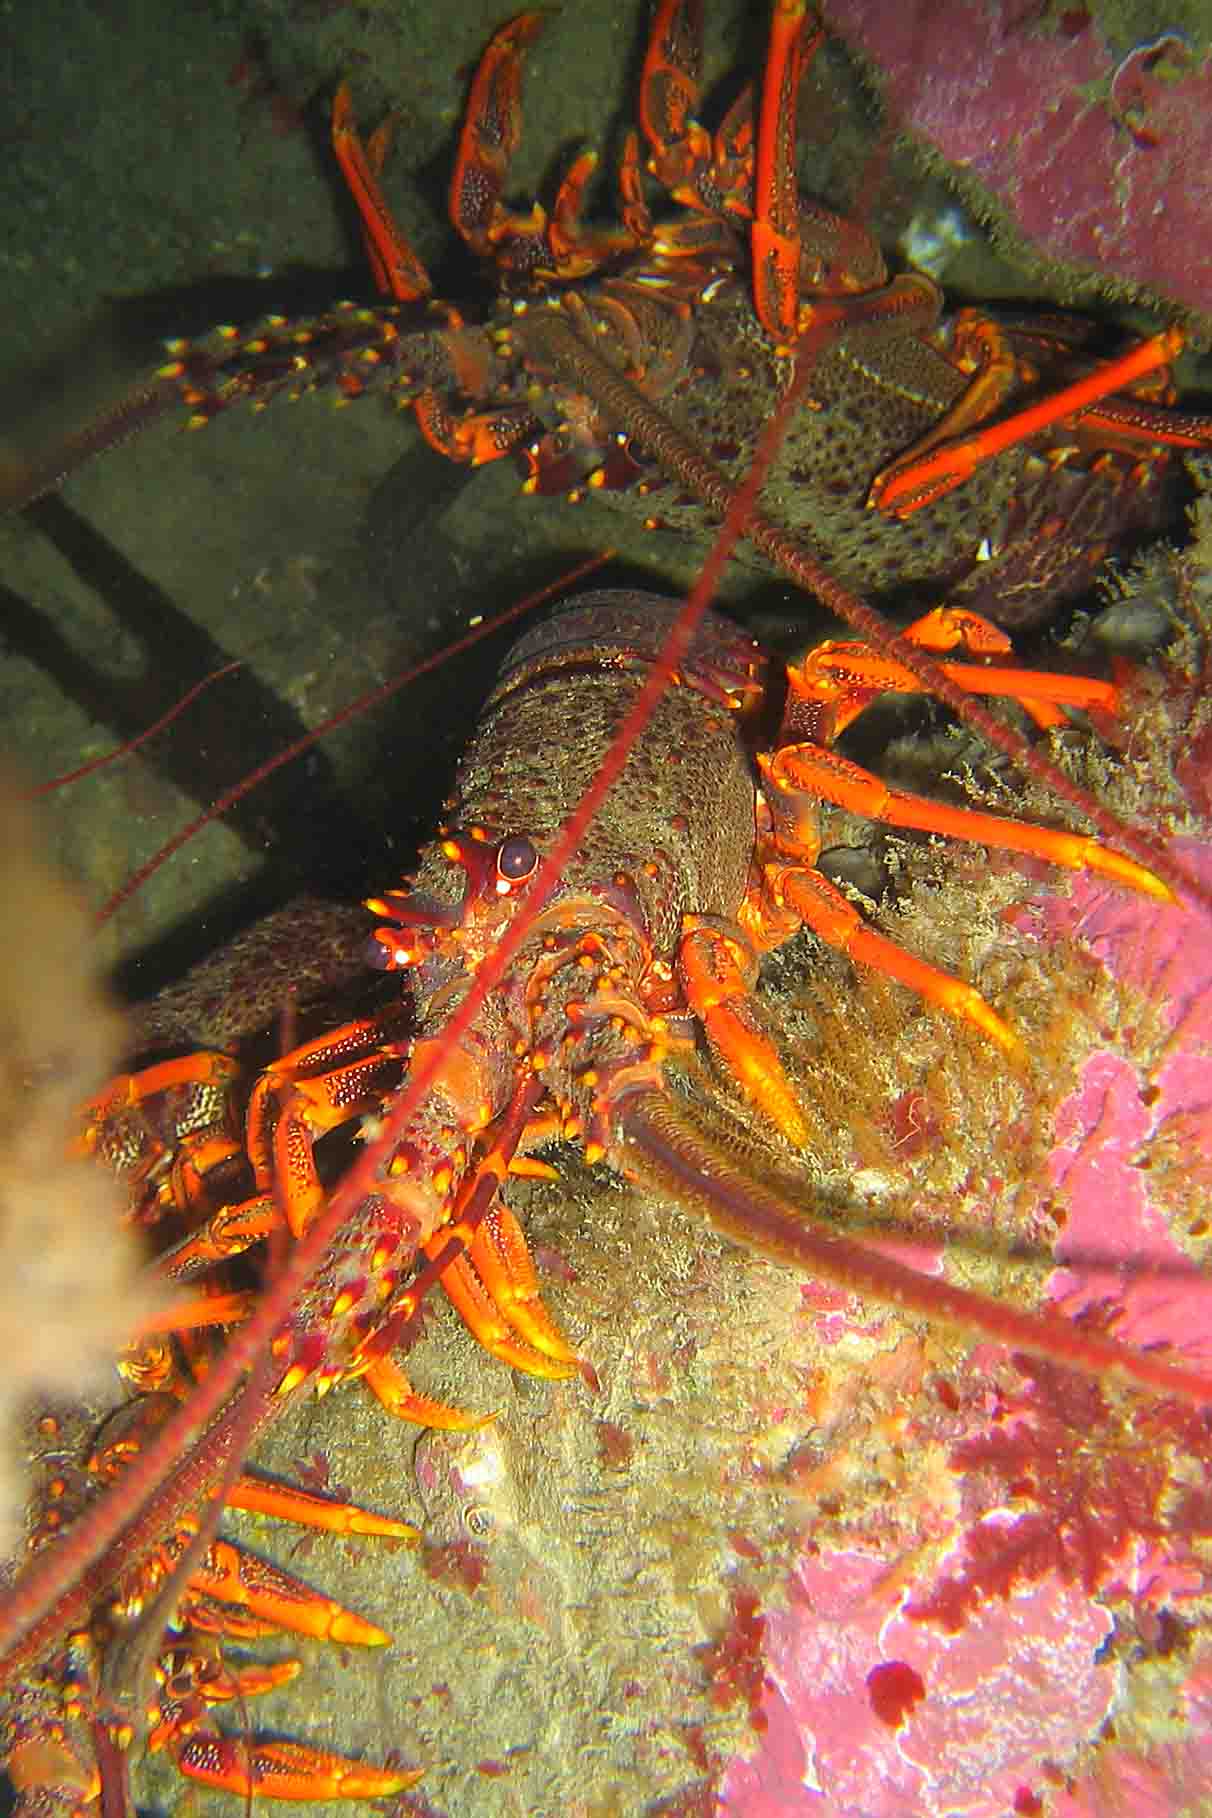 crayfish Breaker Bay Wgtn